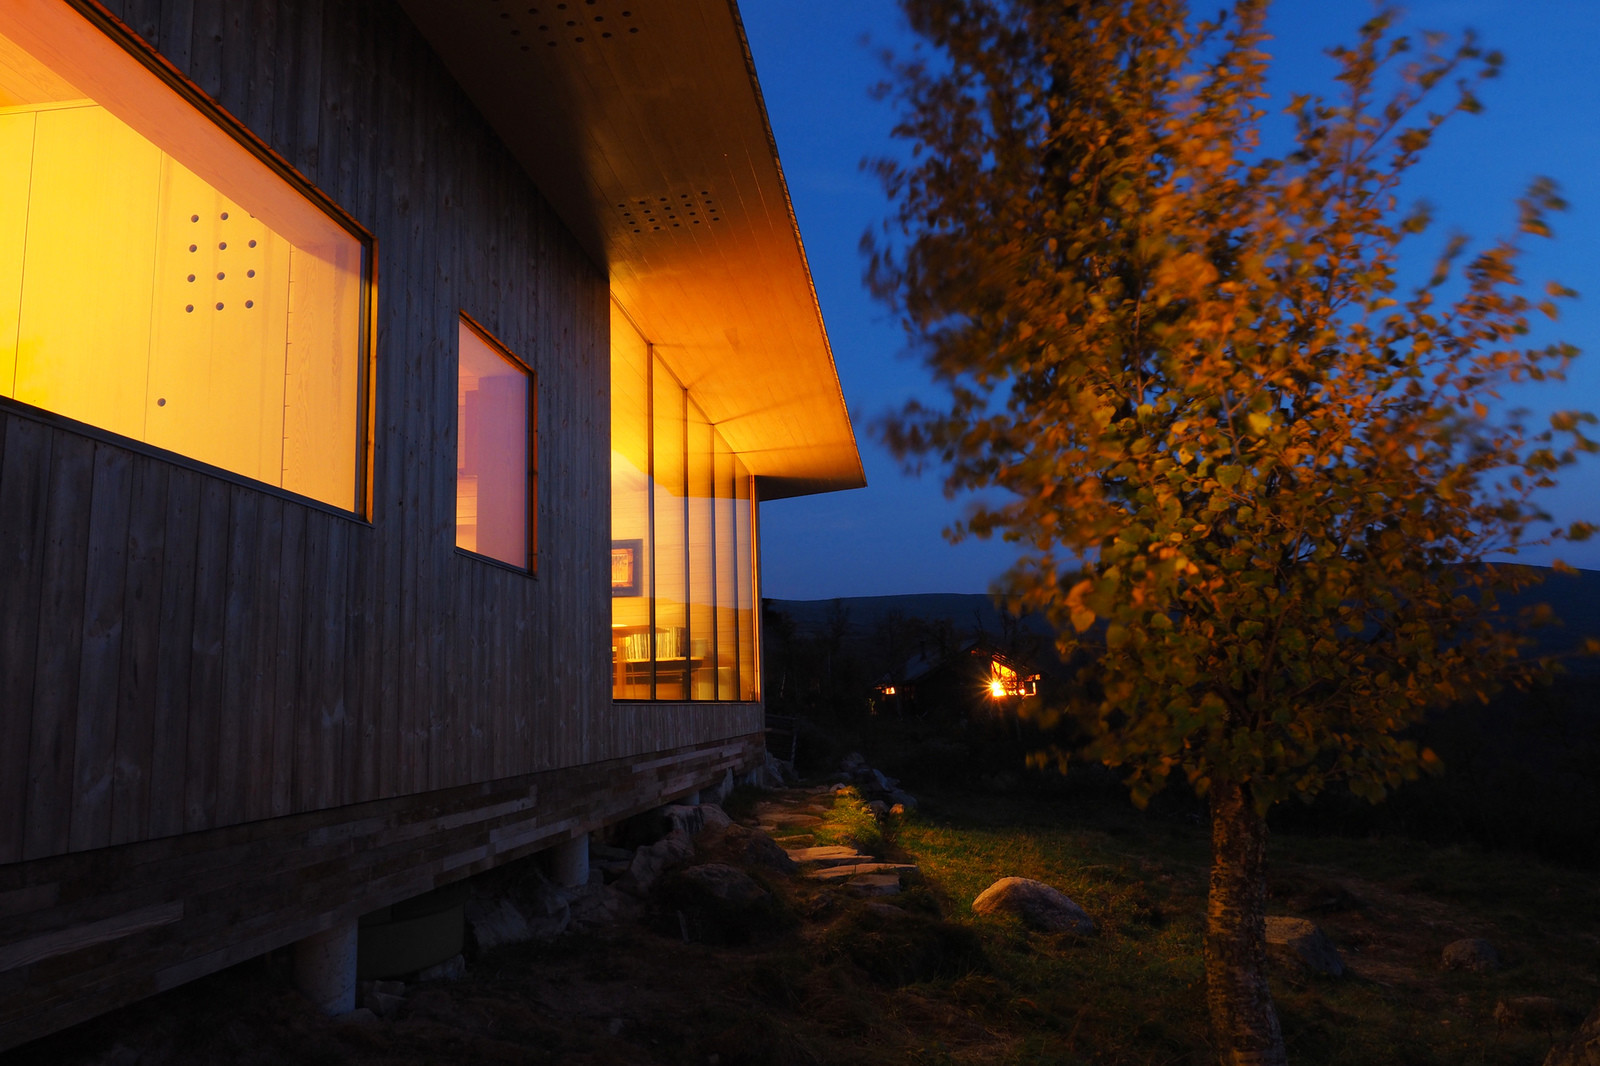 Норвежский загородный дом с видом на реку